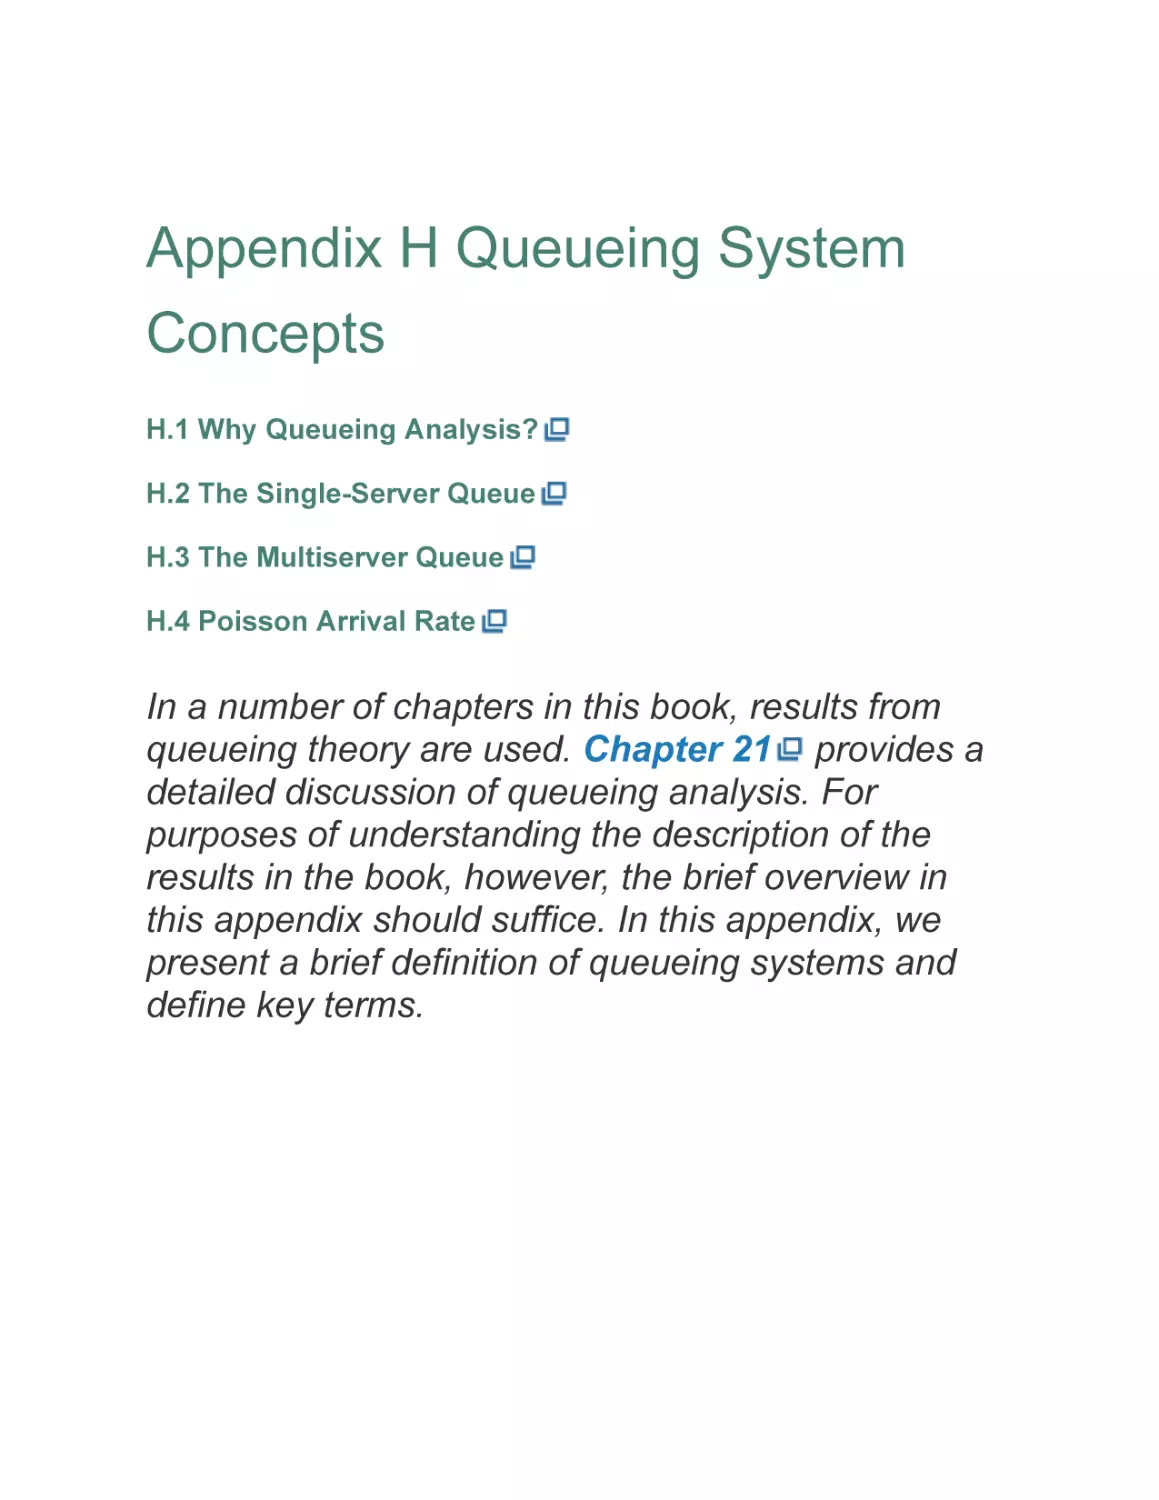 Appendix H Queueing System Concepts